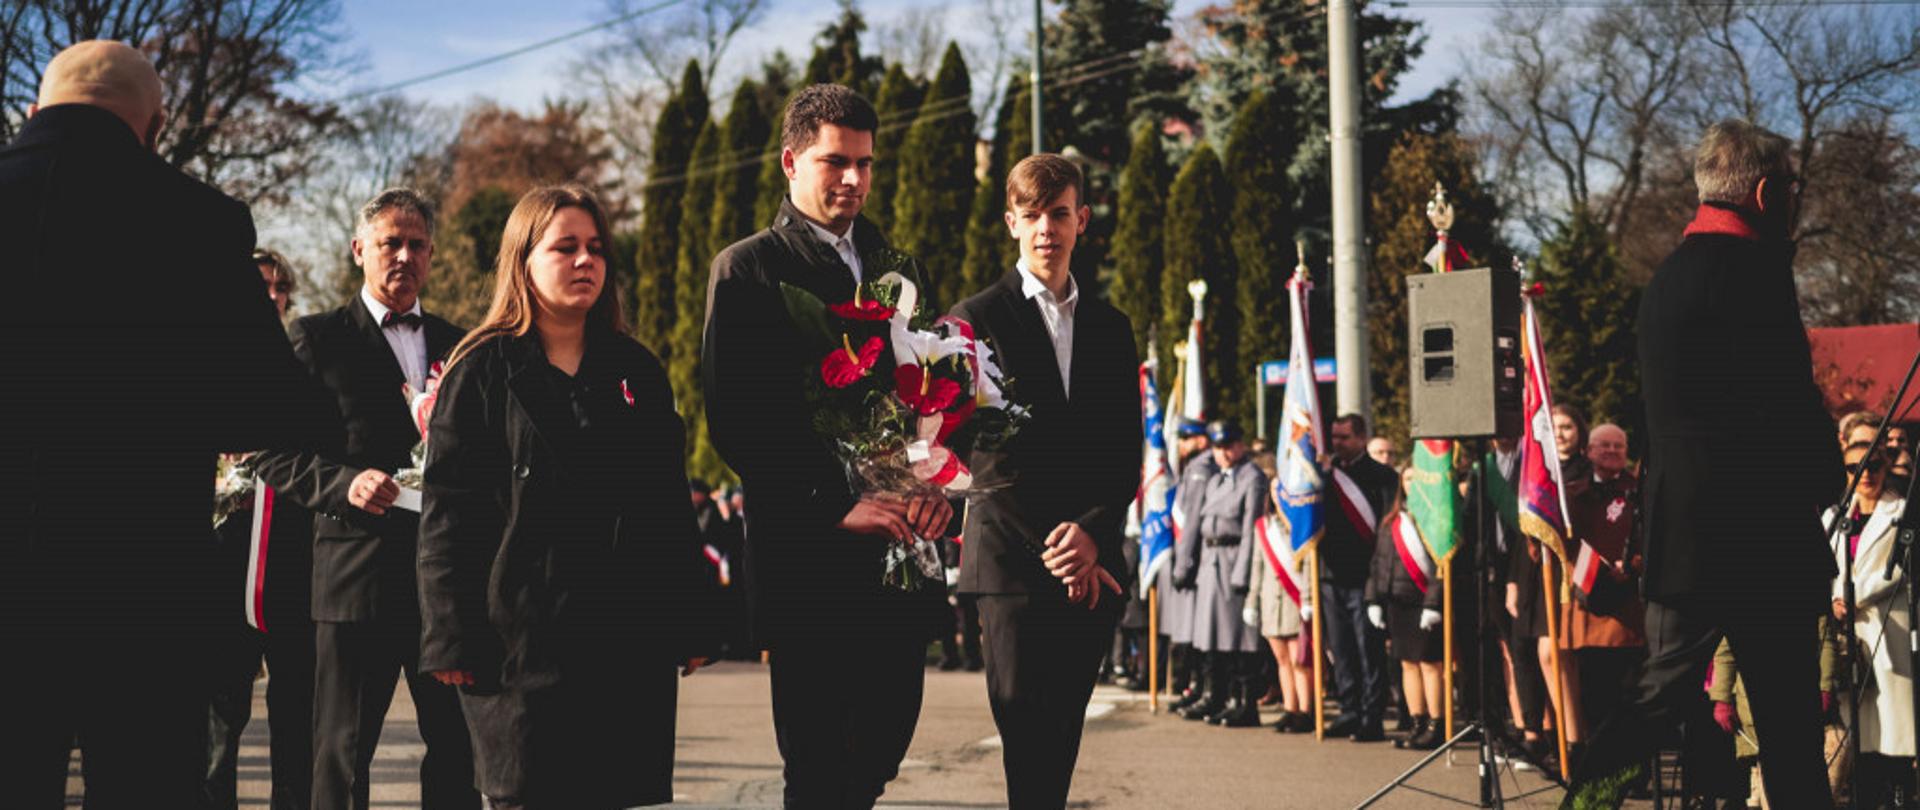 zdjęcie przedstawia członków Samorządu Uczniowskiego i jego opiekuna w trzyosobowej delegacji z bukietem biało-czerwonych kwiatów w ręku podczas składanie kwiatów pod pomnikiem wolności w mielcu, w tle widać poczty sztandarowe, drzewa i bezchmurne niebo